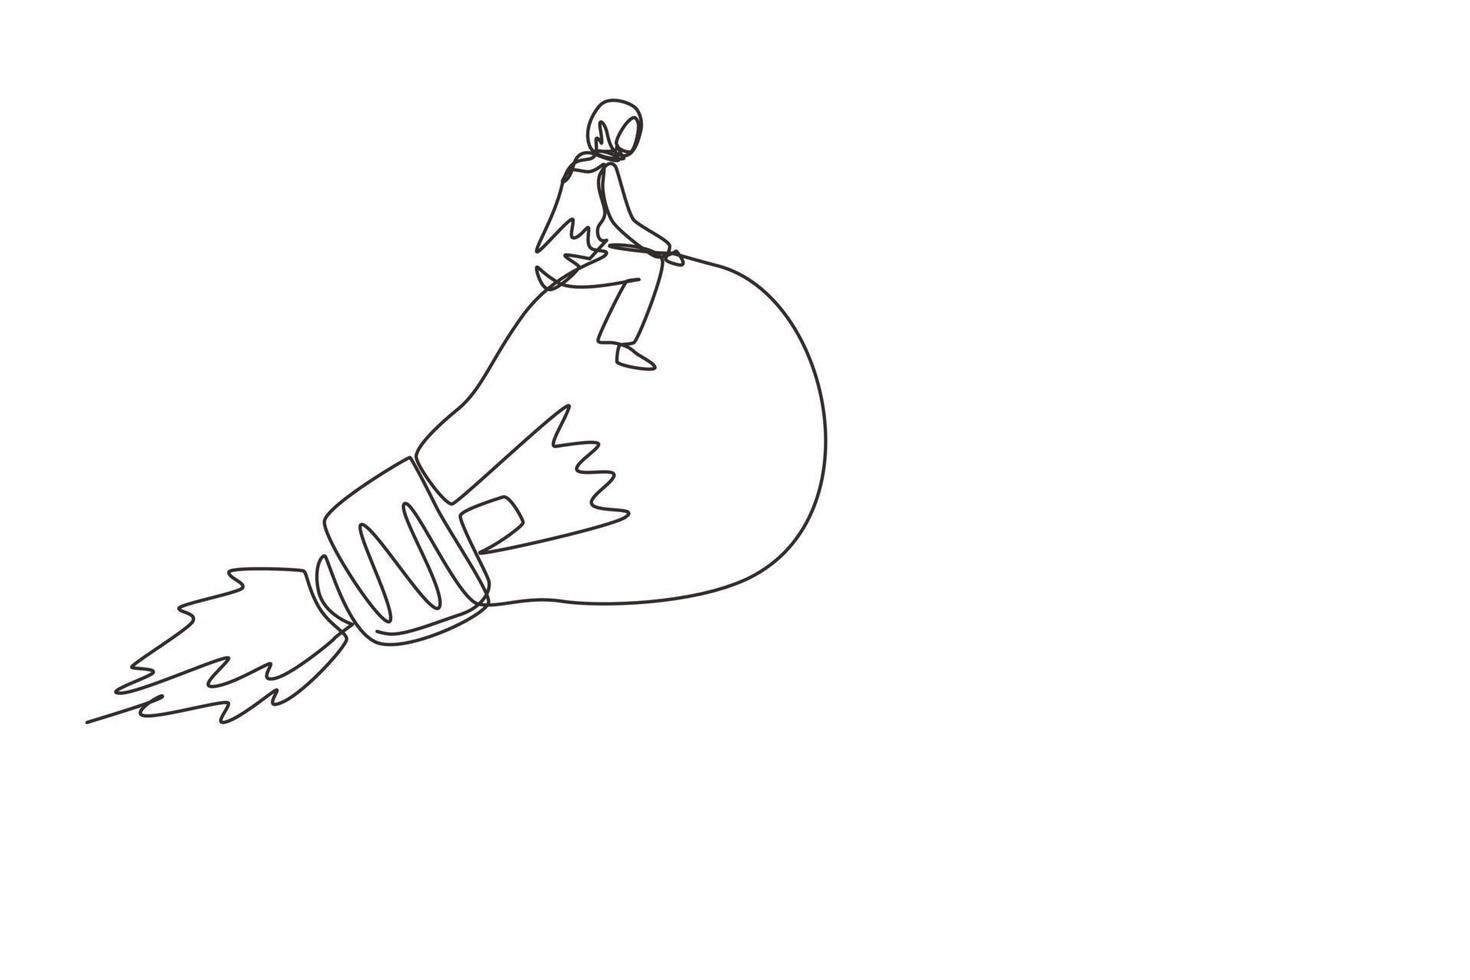 dessin en ligne continue unique jolie femme d'affaires arabe à cheval volant lampe ampoule lumineuse avec fusée. entreprise de démarrage d'innovation pour atteindre l'objectif de réussite. une ligne dessiner illustration vectorielle de conception vecteur